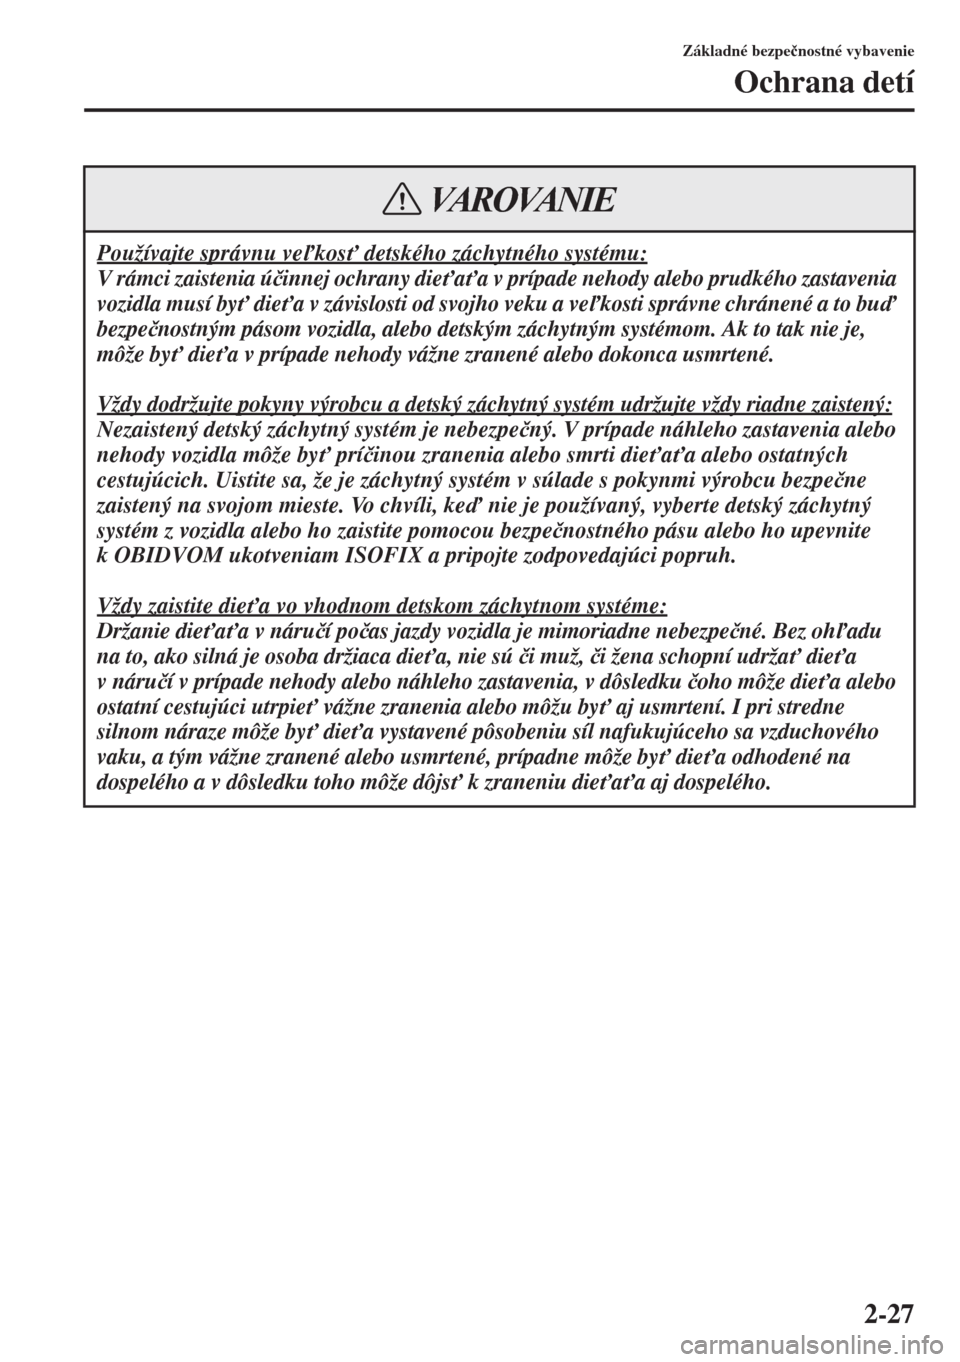 MAZDA MODEL CX-5 2015  Užívateľská príručka (in Slovak) 2-27
Základné bezpe�þnostné vybavenie
Ochrana detí
Používajte správnu vekos" detského záchytného systému:
V rámci zaistenia ú�þinnej ochrany die"a"a v prípade nehody alebo prudké